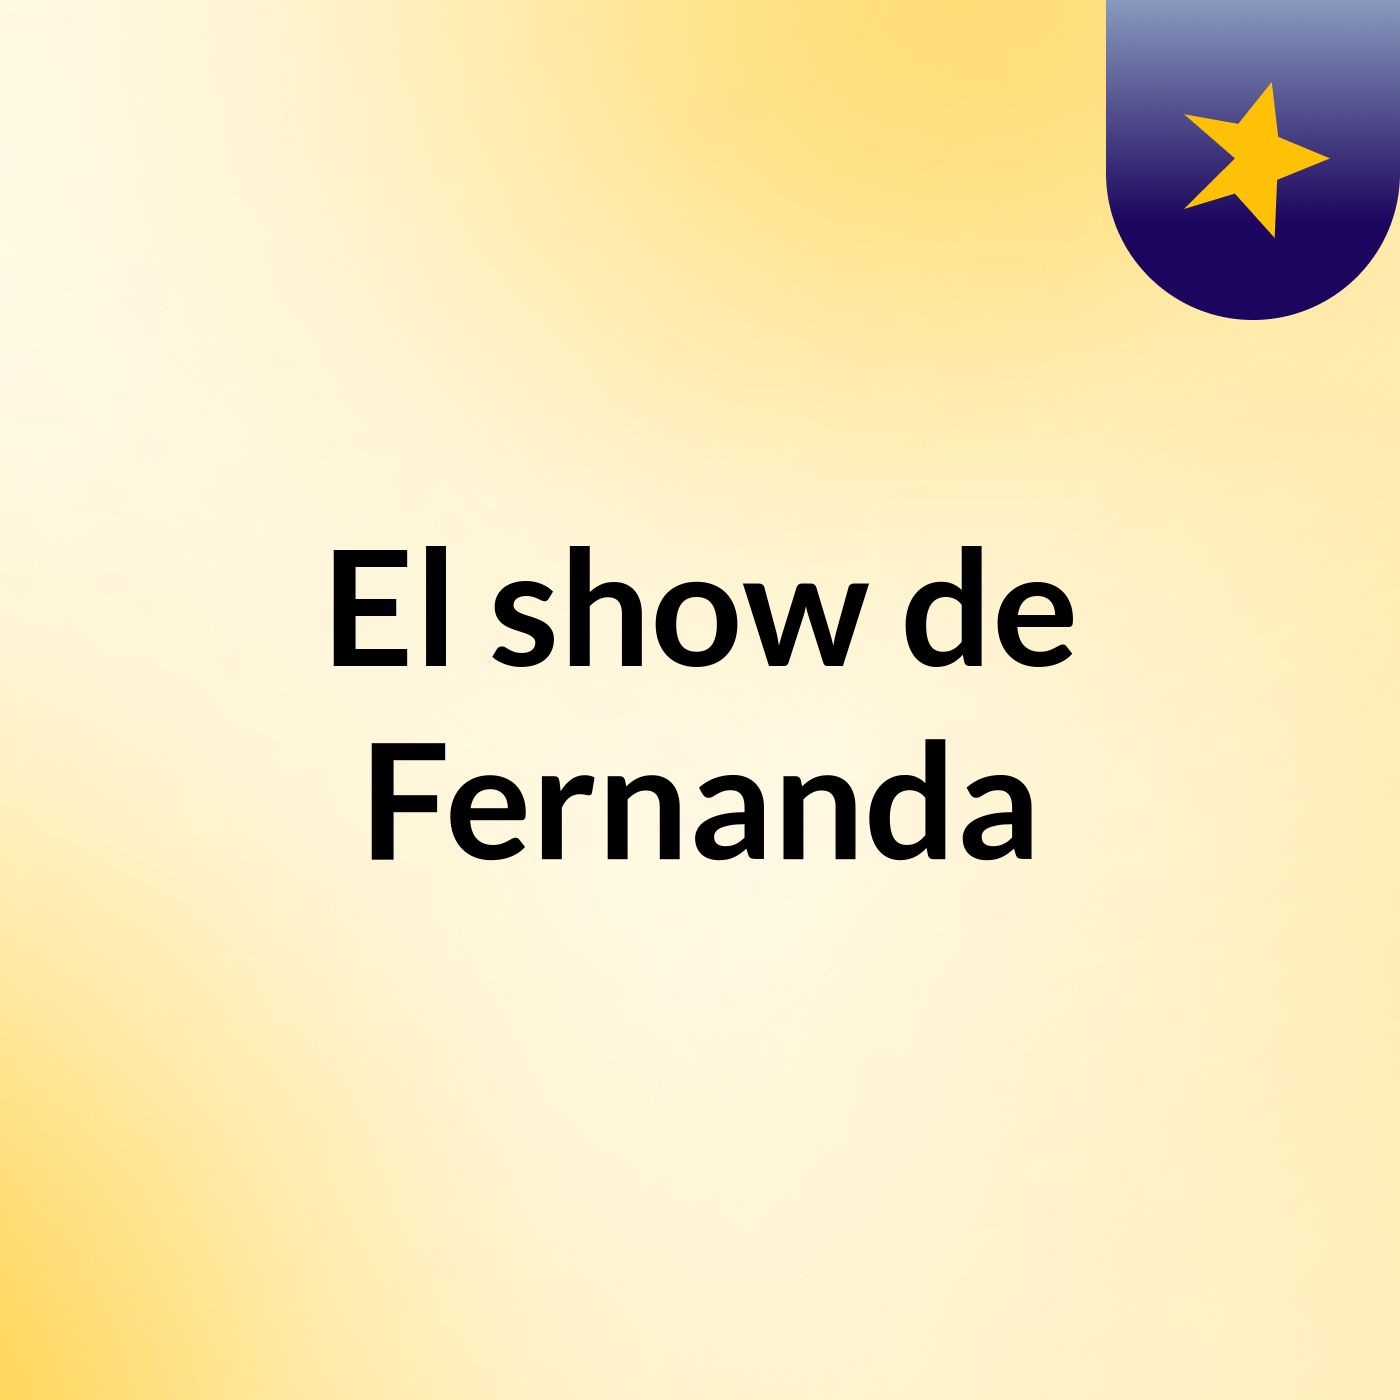 El show de Fernanda